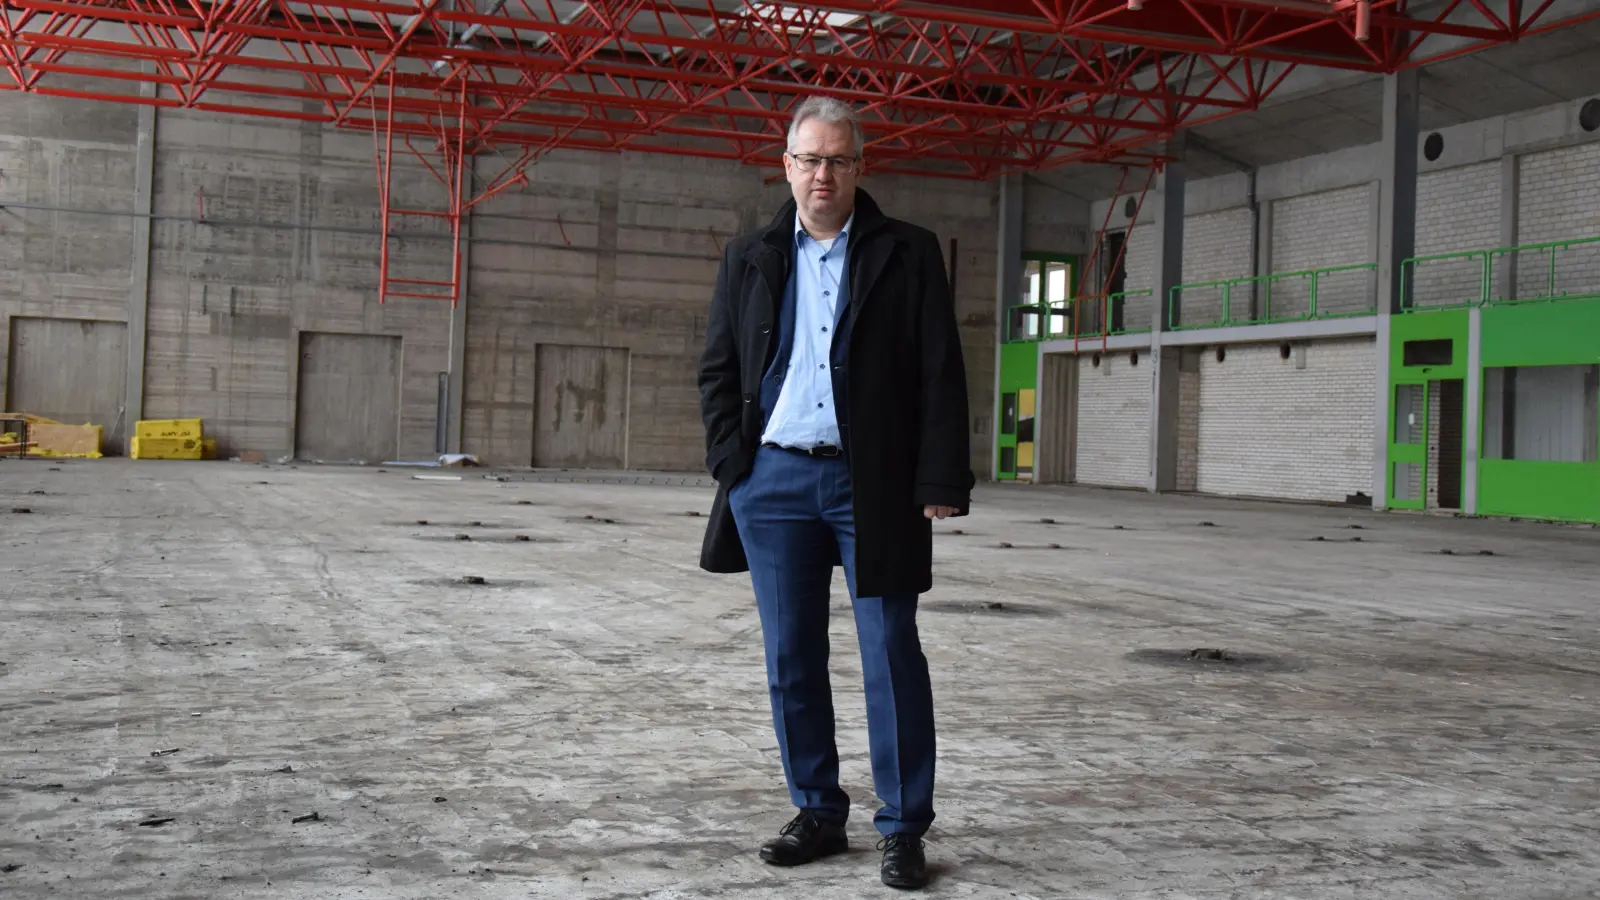 Martin Dannhäußer, Bürgermeister und Vorsitzender des Schulverbandes in Creußen, in der Turnhallen-Baustelle. (Foto: jle)